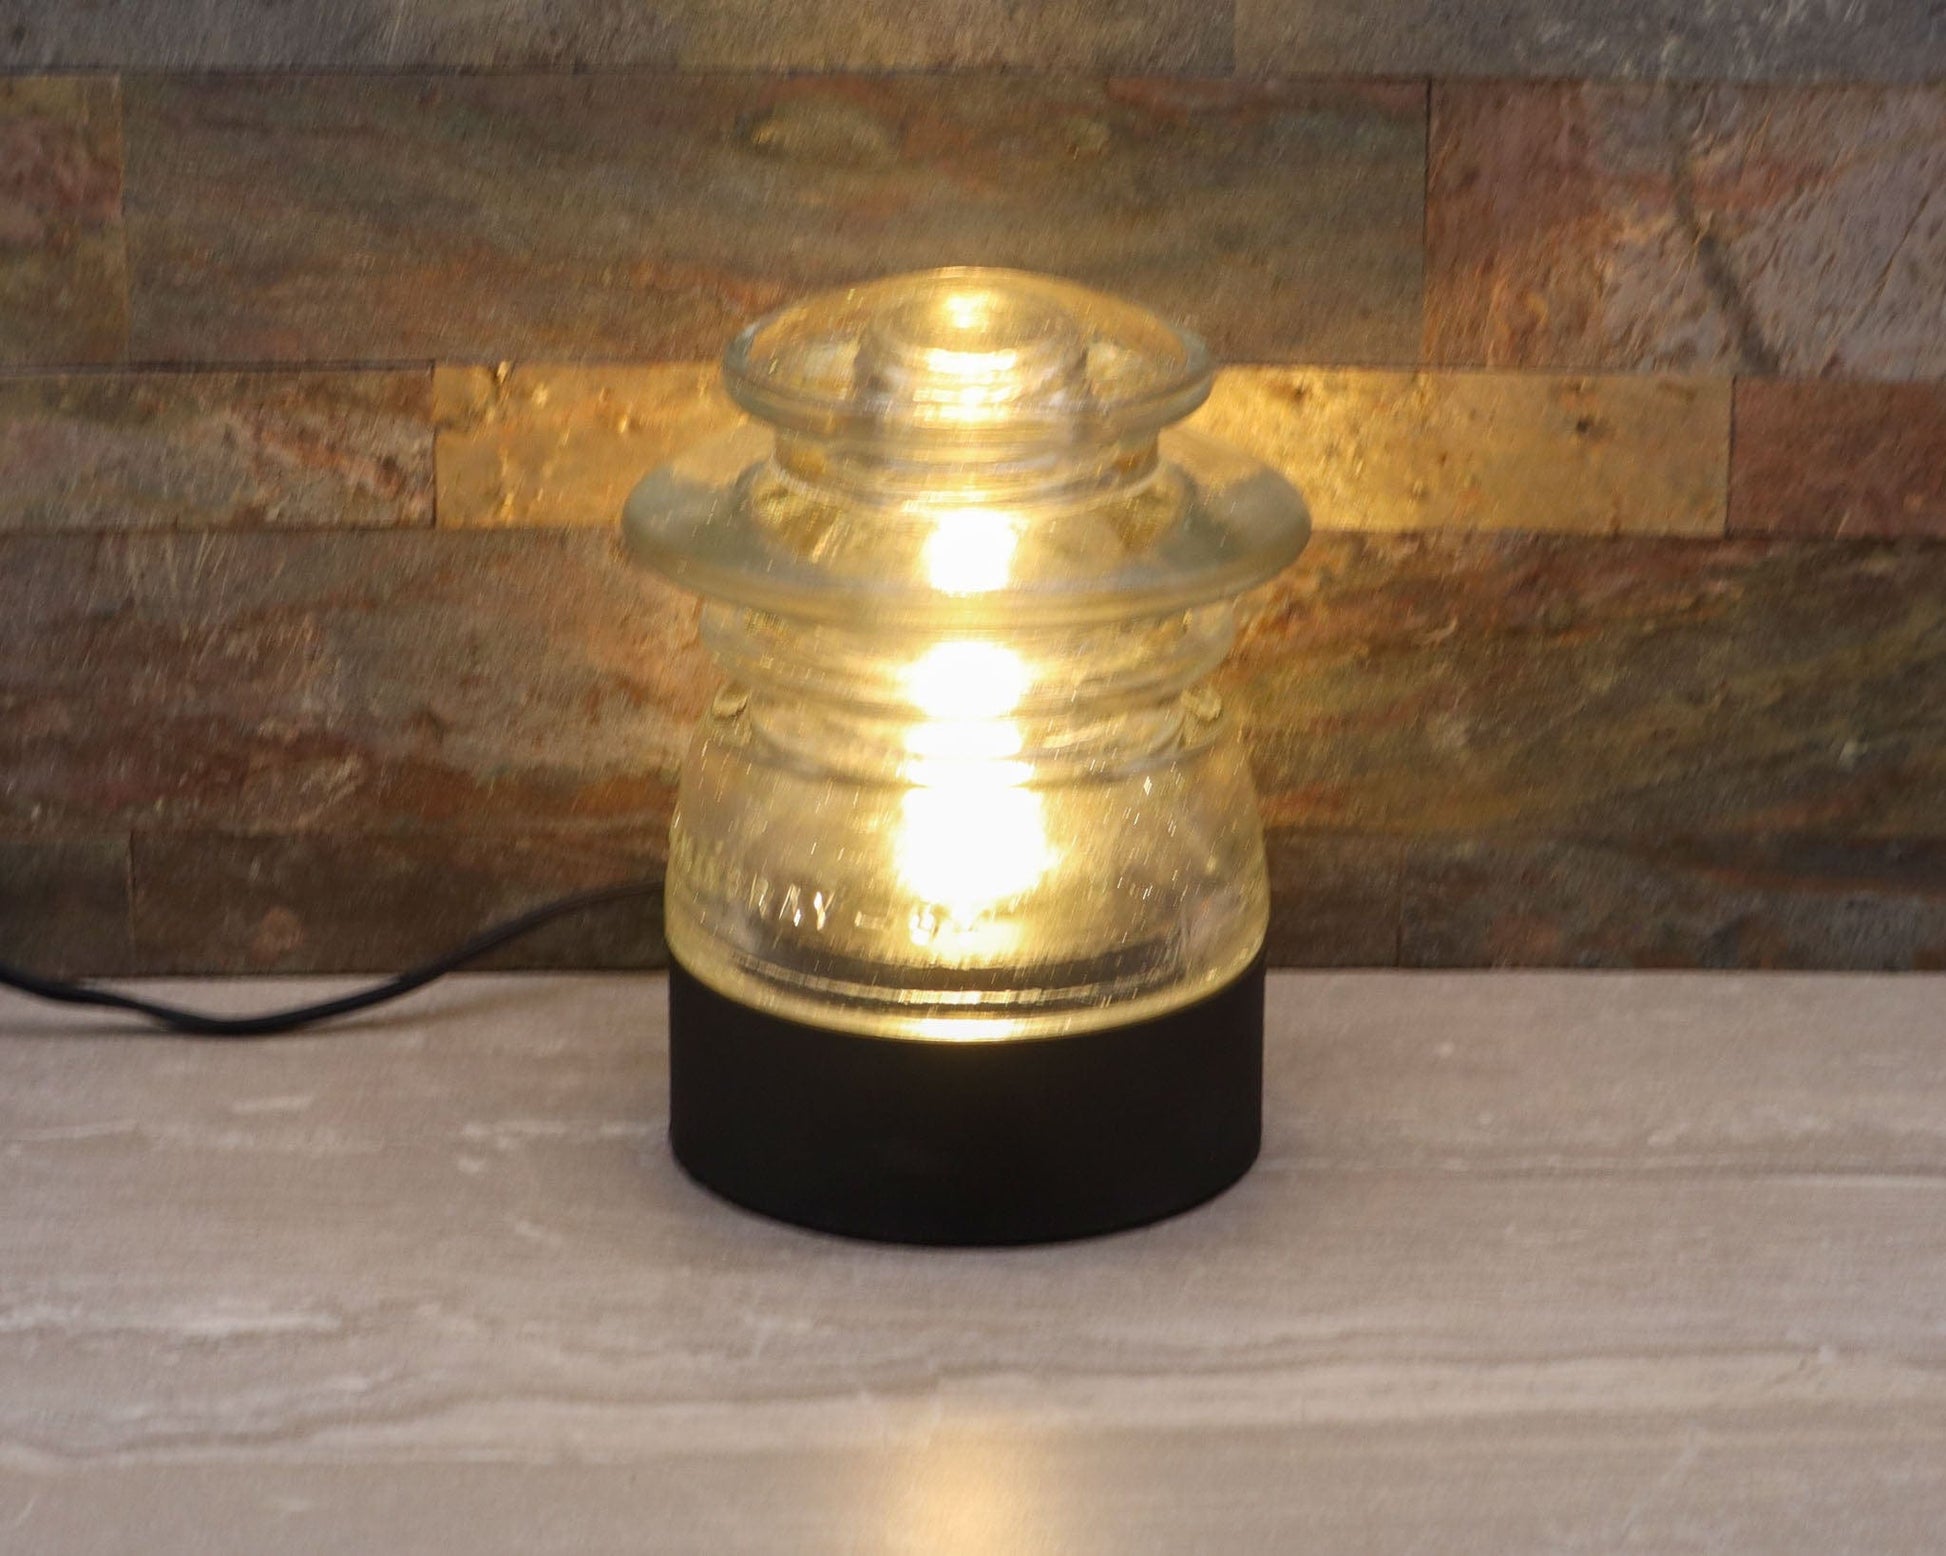 LightAndTimeArt Lamp base Lamp Base for "Hemingray-53" Glass Insulators, Industrial Lighting, Man Cave Decor